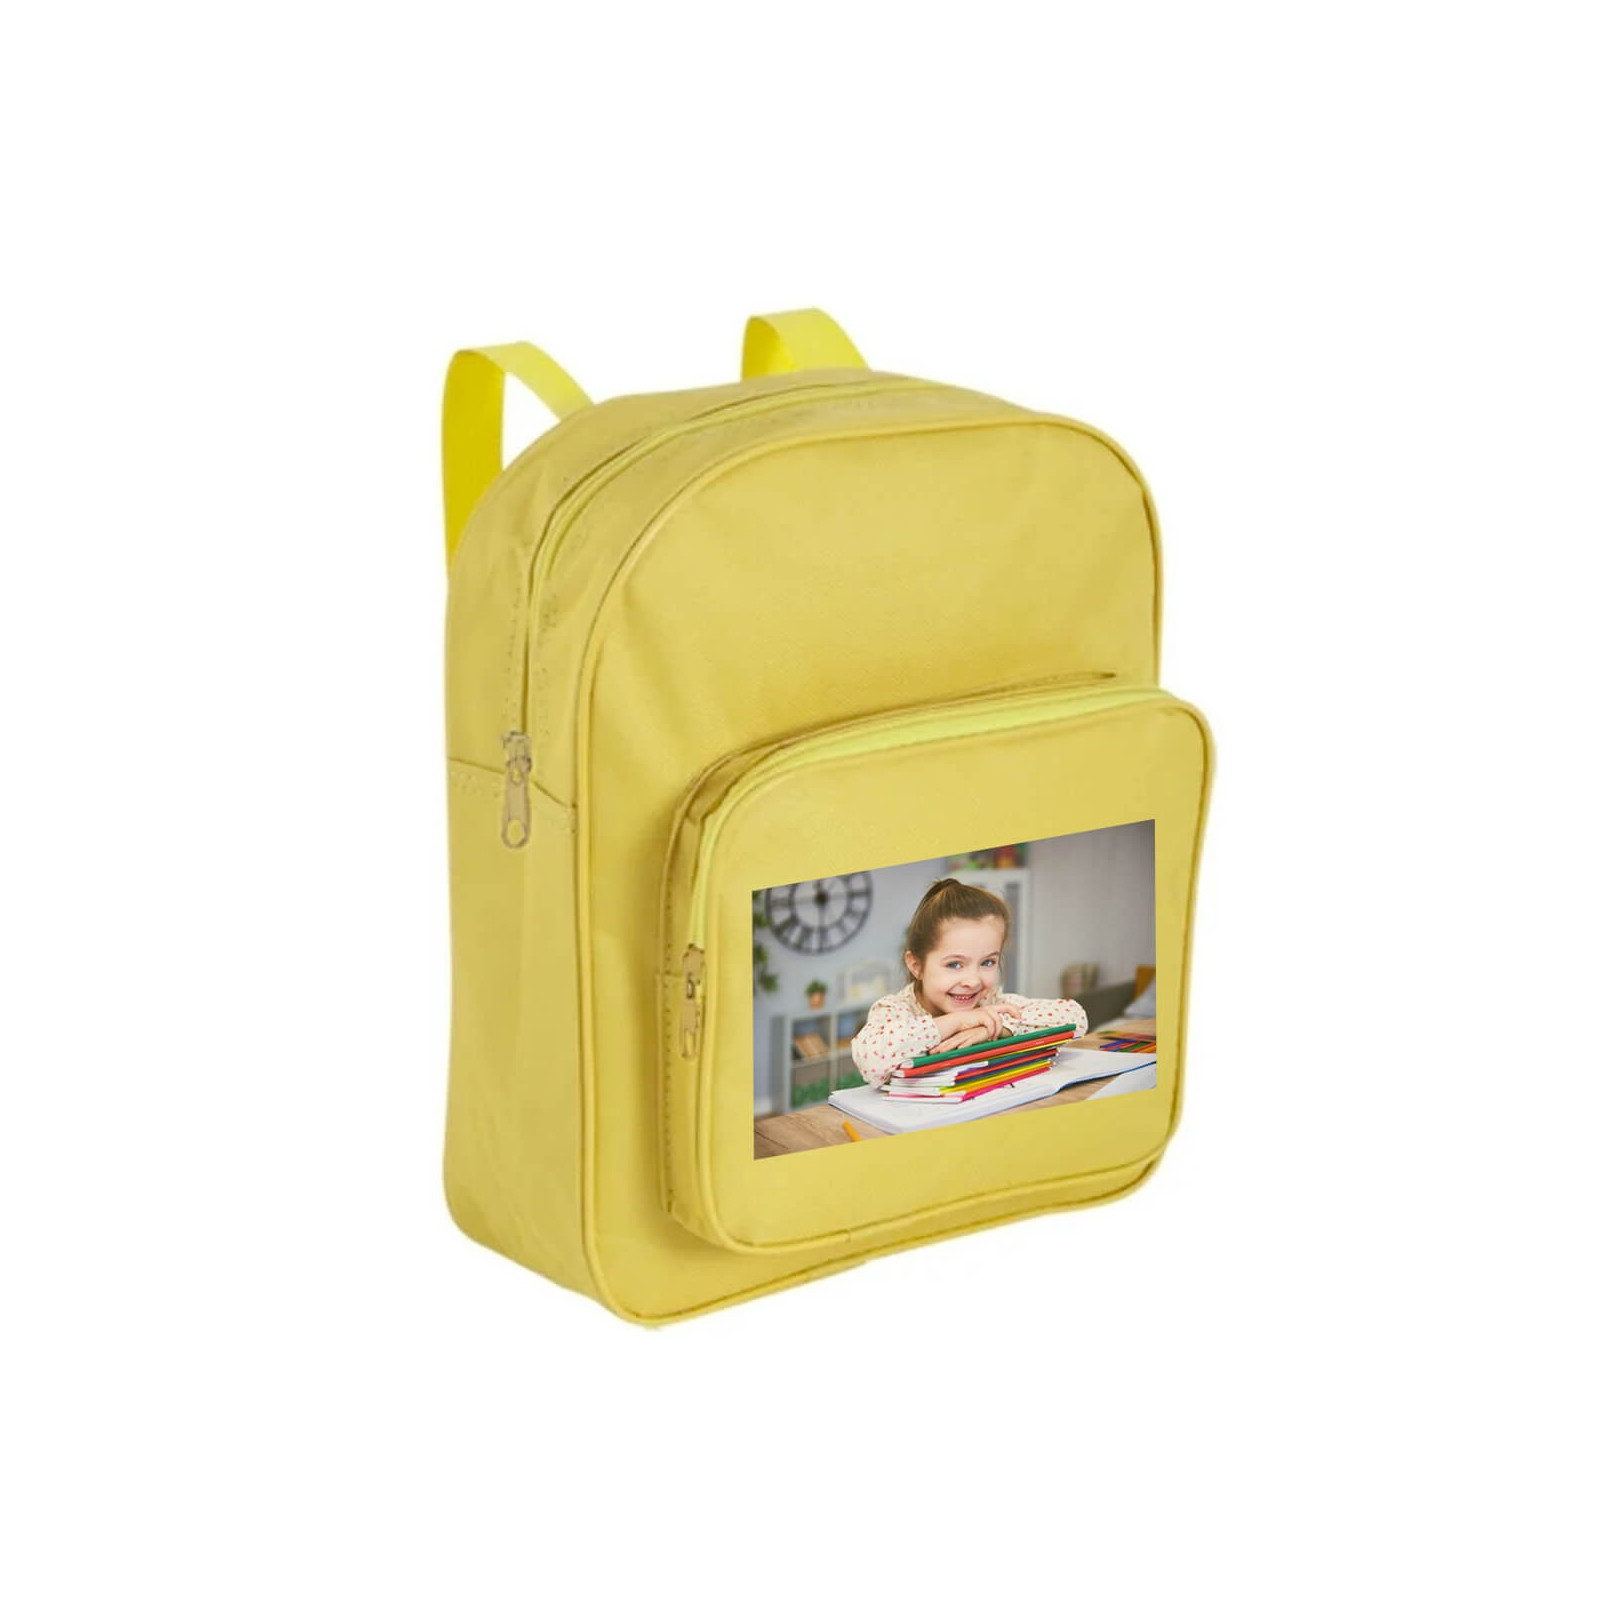 Sac à dos enfant jaune personnalisé avec photo couleur